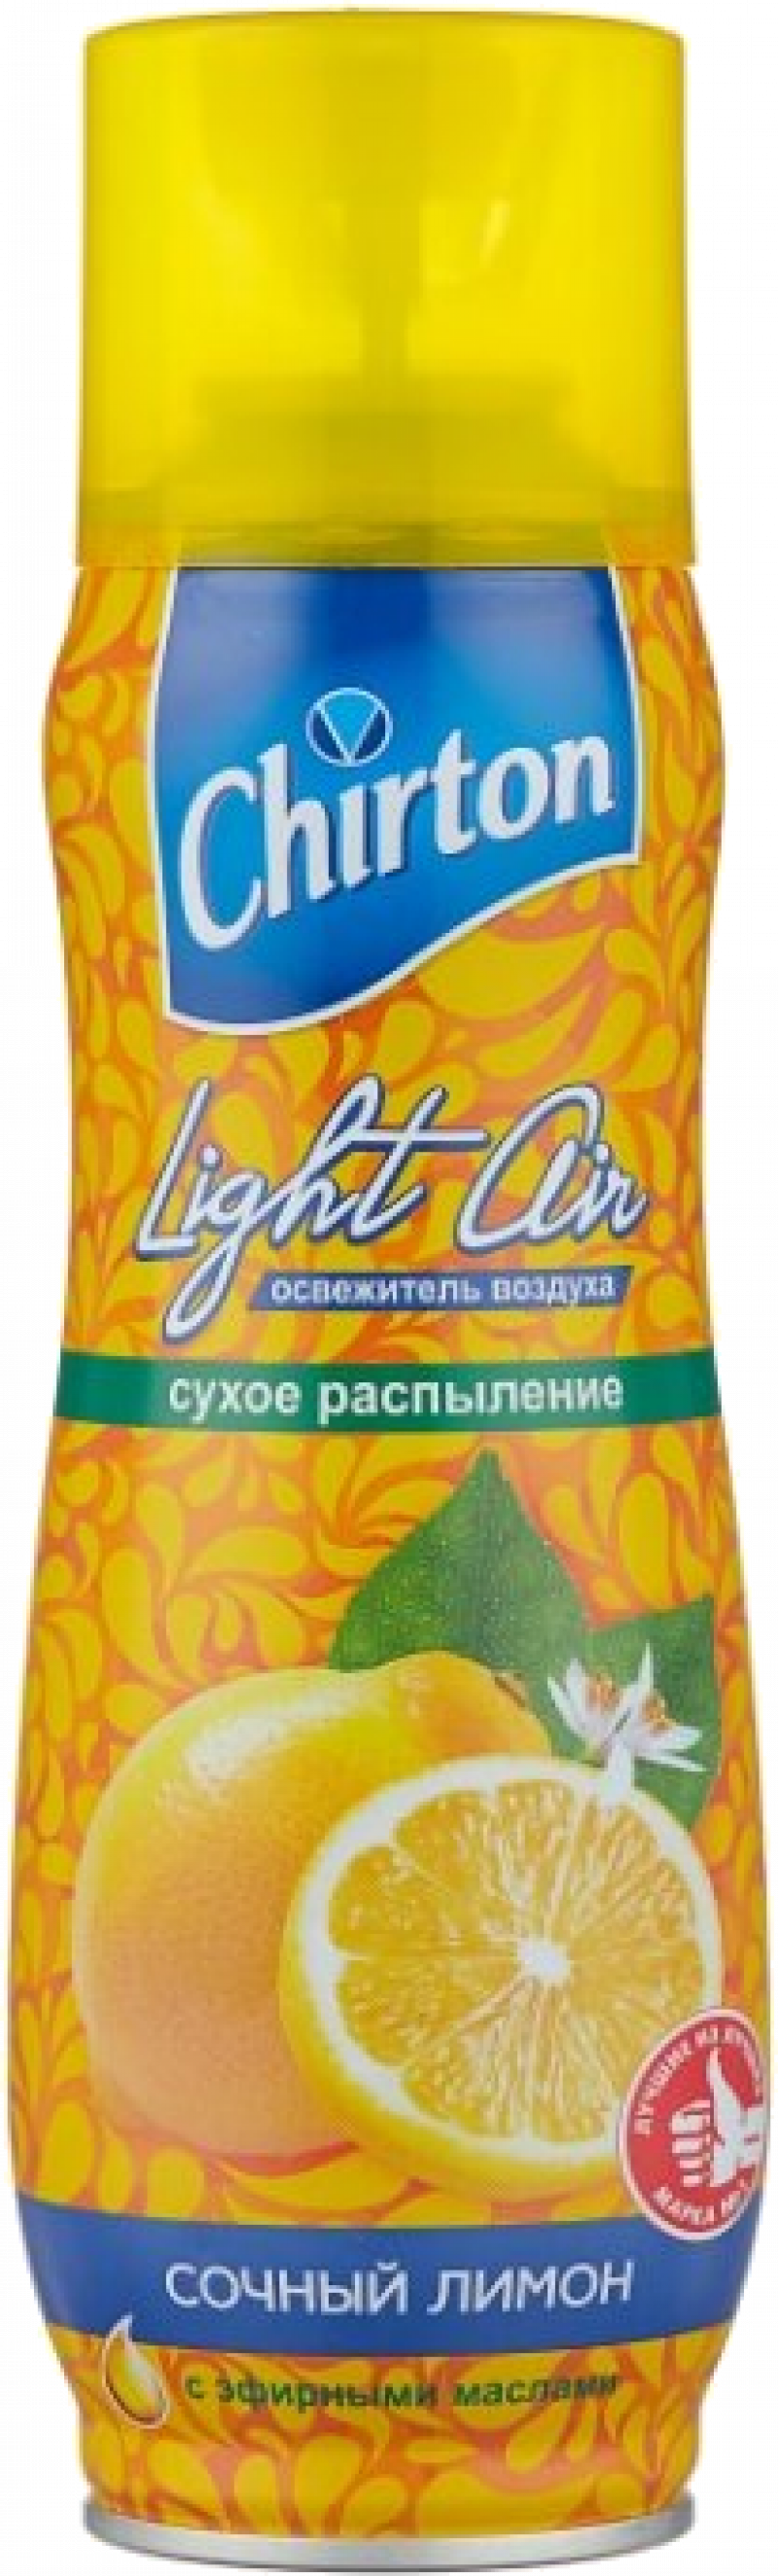 Освежитель воздуха ТМ Chirton Light Air сочный лимон 300мл